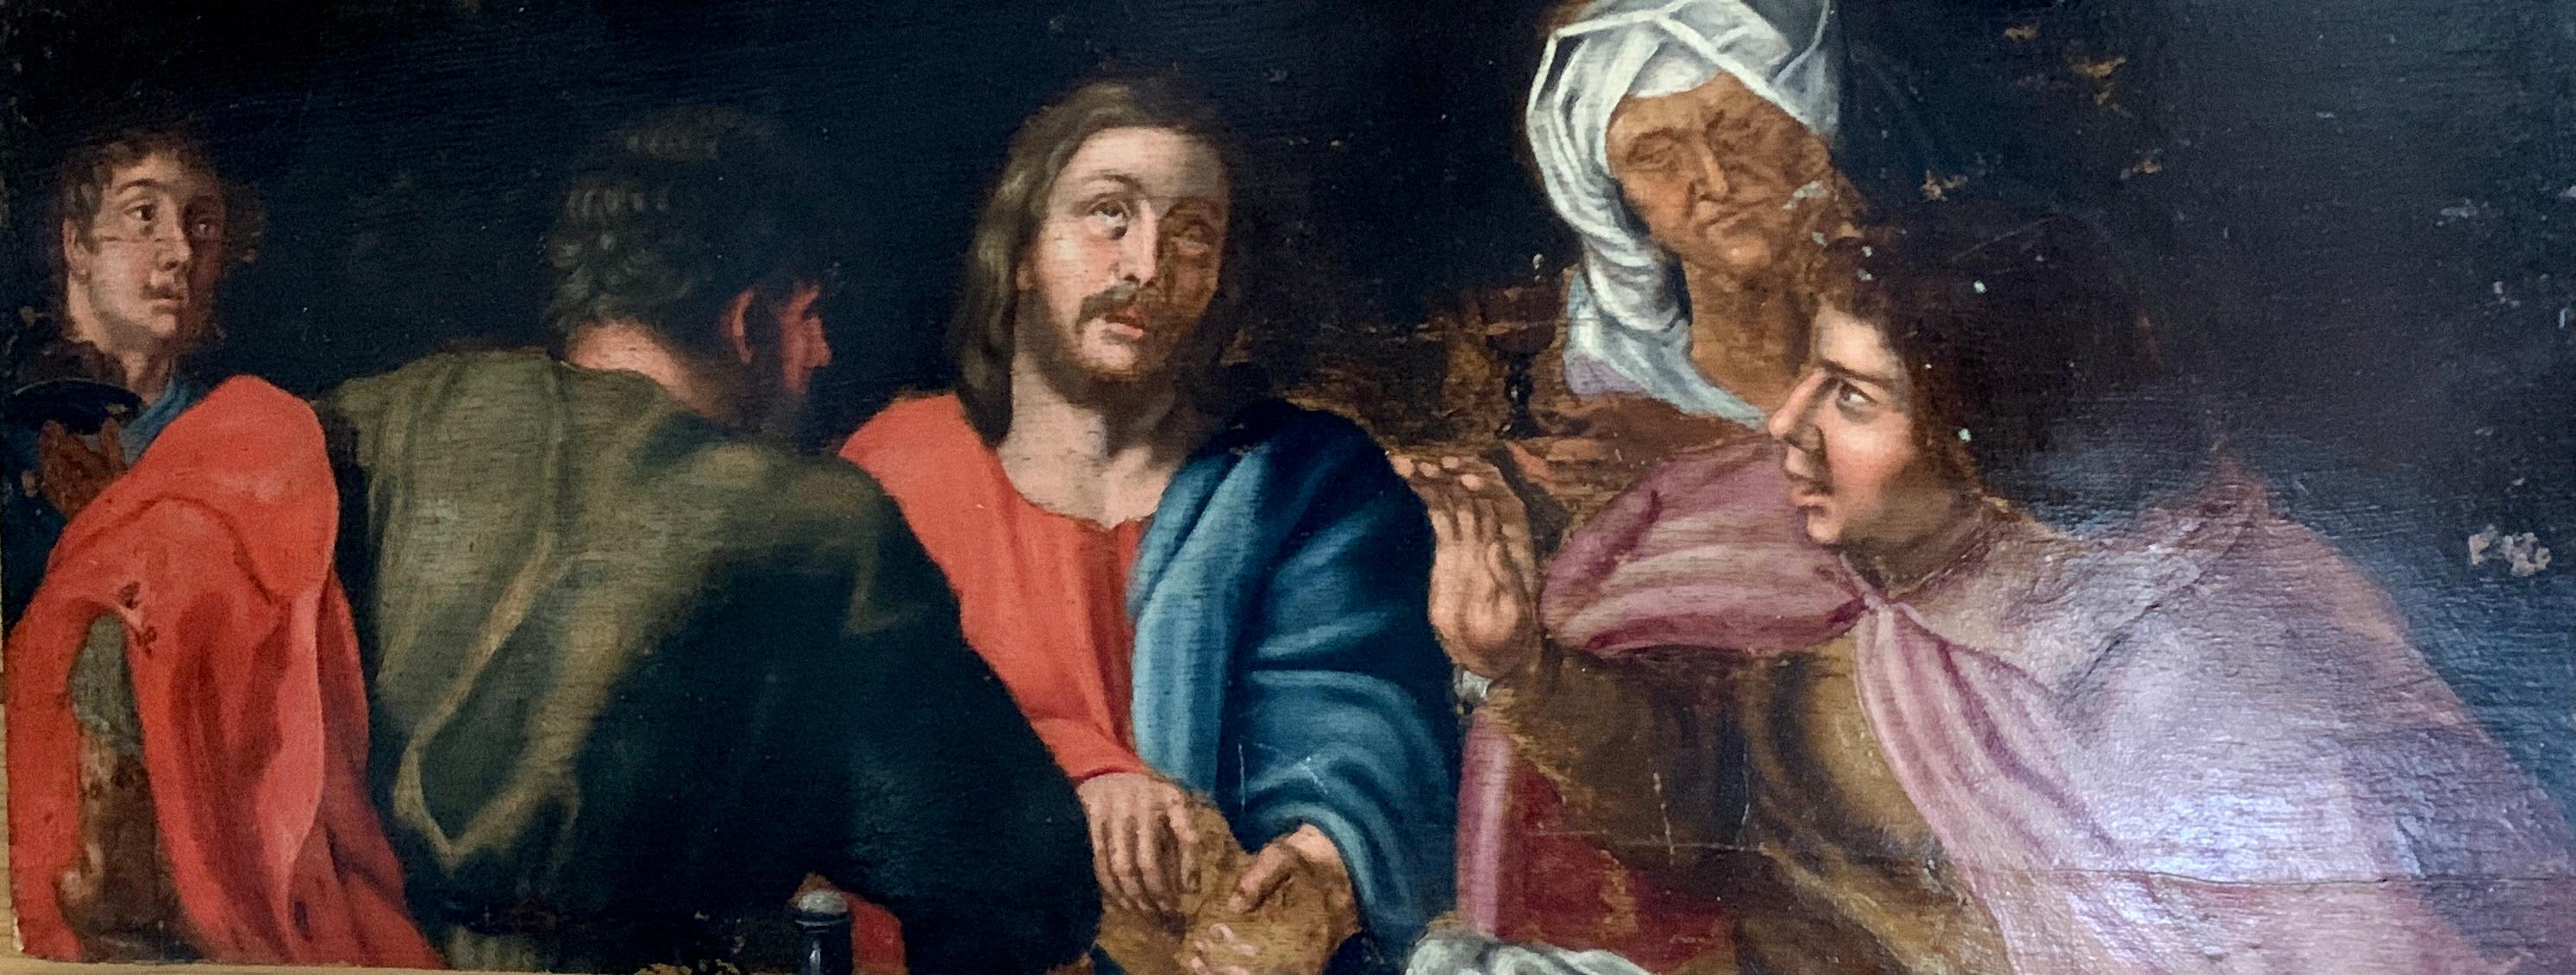 Figurative Painting Unknown - Huile européenne du XVIIe siècle, le Christ et ses disciples assis autour d'une table.